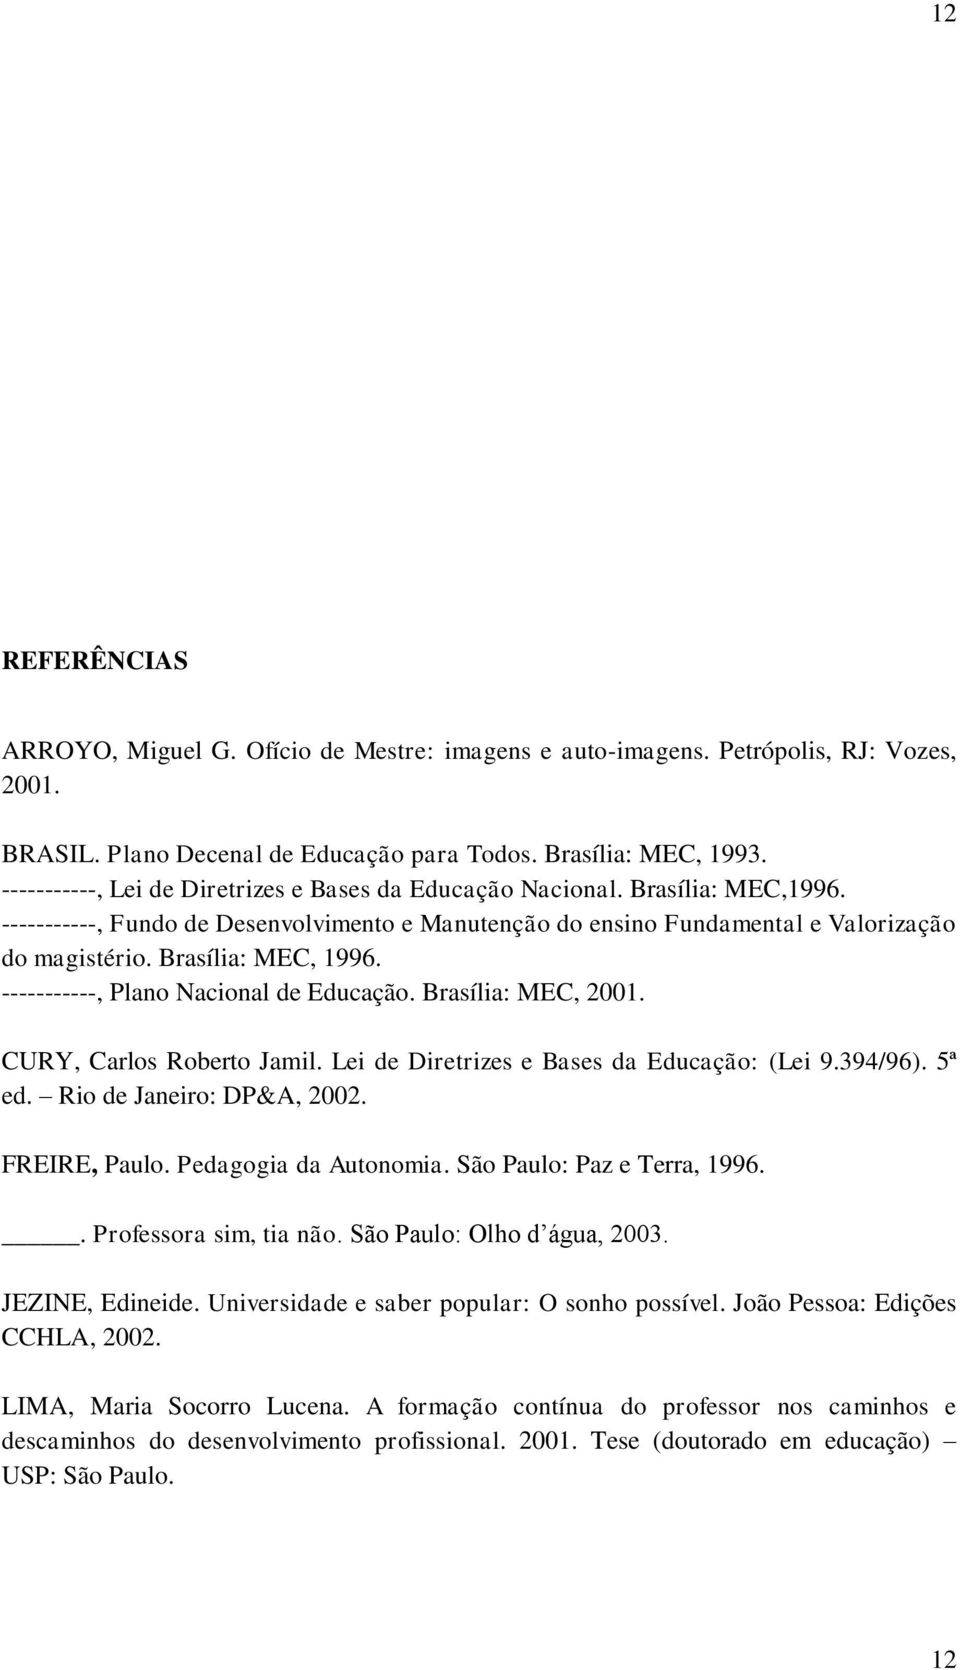 Brasília: MEC, 1996. -----------, Plano Nacional de Educação. Brasília: MEC, 2001. CURY, Carlos Roberto Jamil. Lei de Diretrizes e Bases da Educação: (Lei 9.394/96). 5ª ed. Rio de Janeiro: DP&A, 2002.